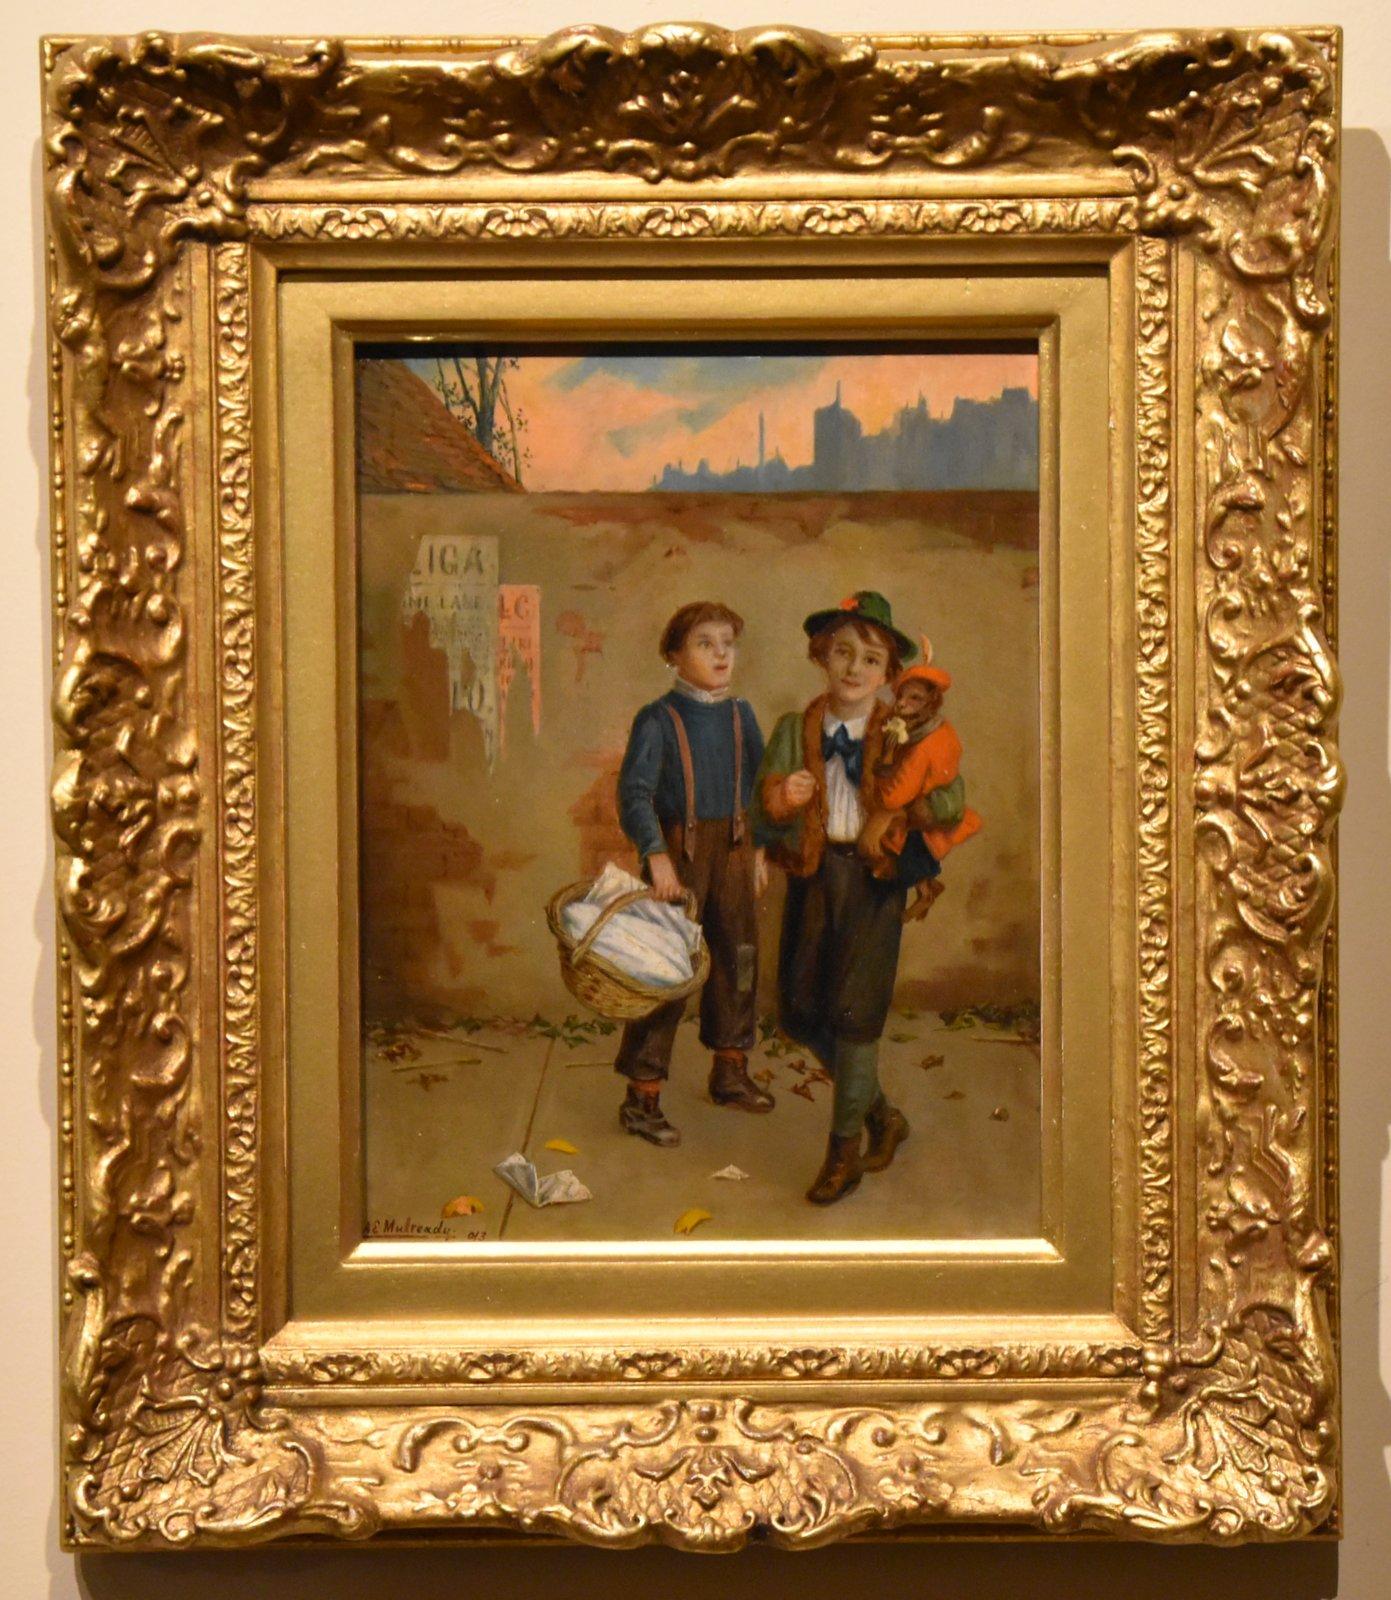 Ölgemälde von Augustus Mulready "Besucher in London" 1844 - 1905
Mitglied der Cranbrook-Kolonie, malt figurative Straßenszenen, stellt regelmäßig in der Royal Academy aus. Öl auf Karton. Unterschrieben, datiert 1903

Maße ungerahmt 9 x 7